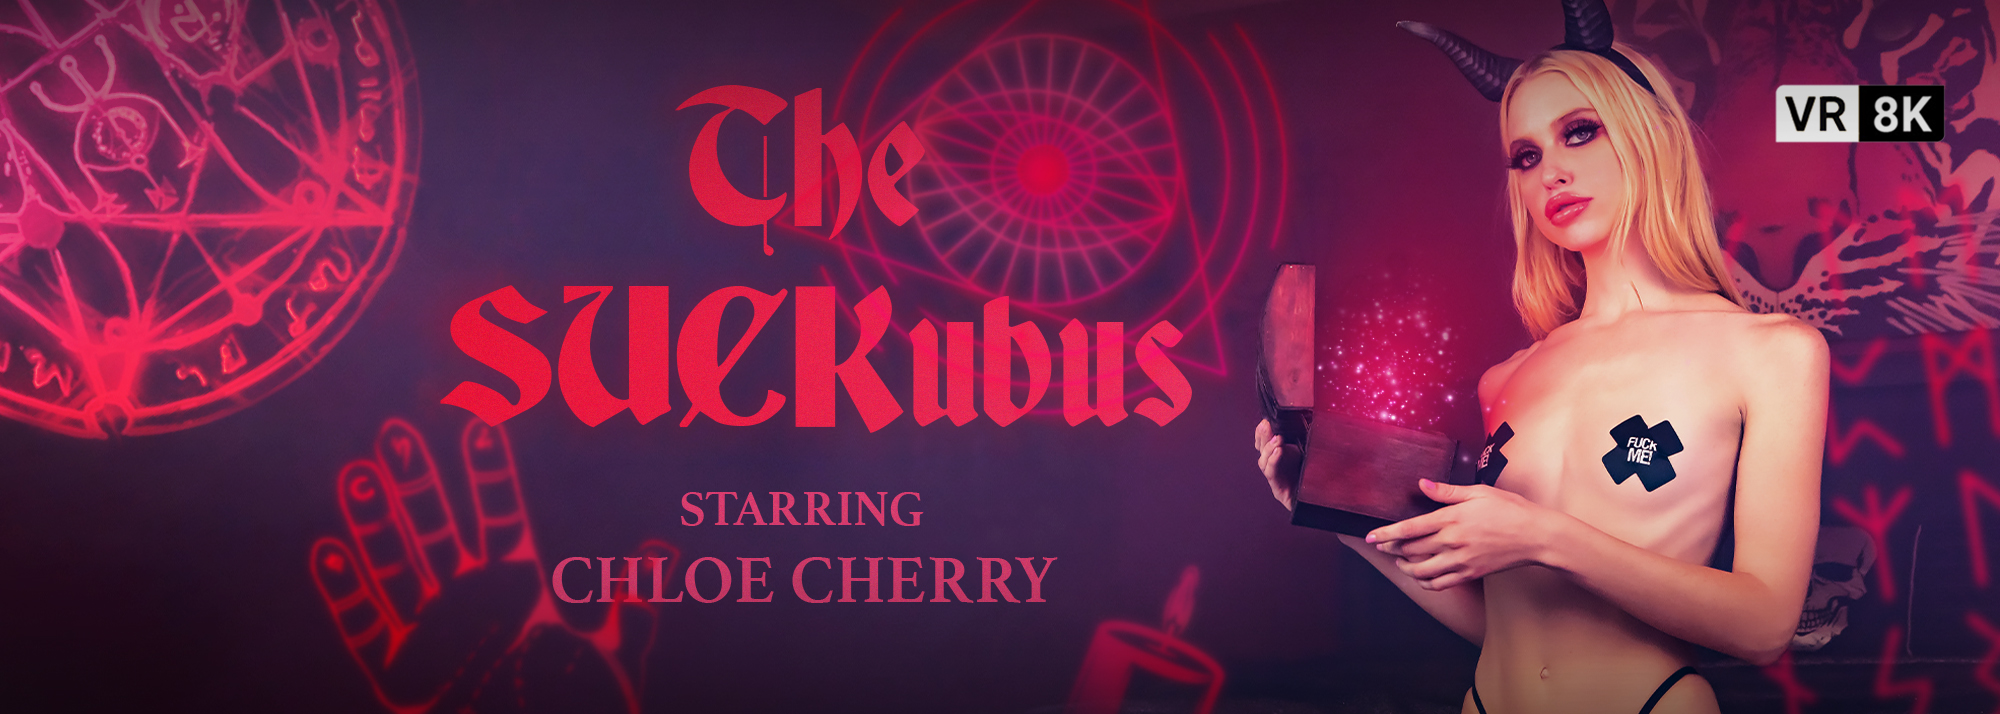 The SUCKubus - VR Video, Starring: Chloe Cherry